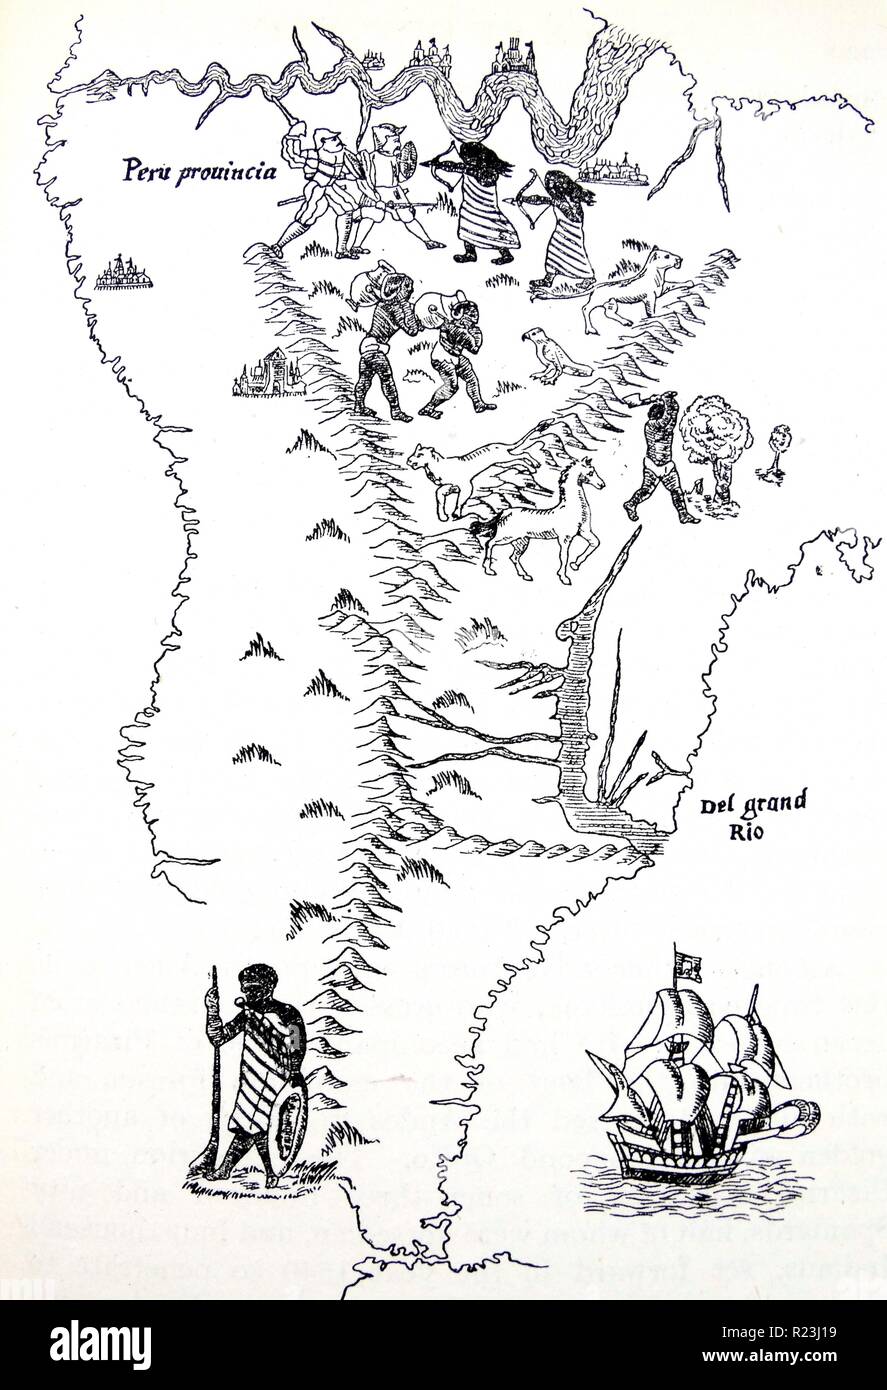 Le Pérou et l'Amérique du Sud. À partir de la carte du monde de 1544, habituellement attribué à Sébastien Cabot. En haut est montré le fleuve Amazone, découvert par Orellana en 1541. Banque D'Images